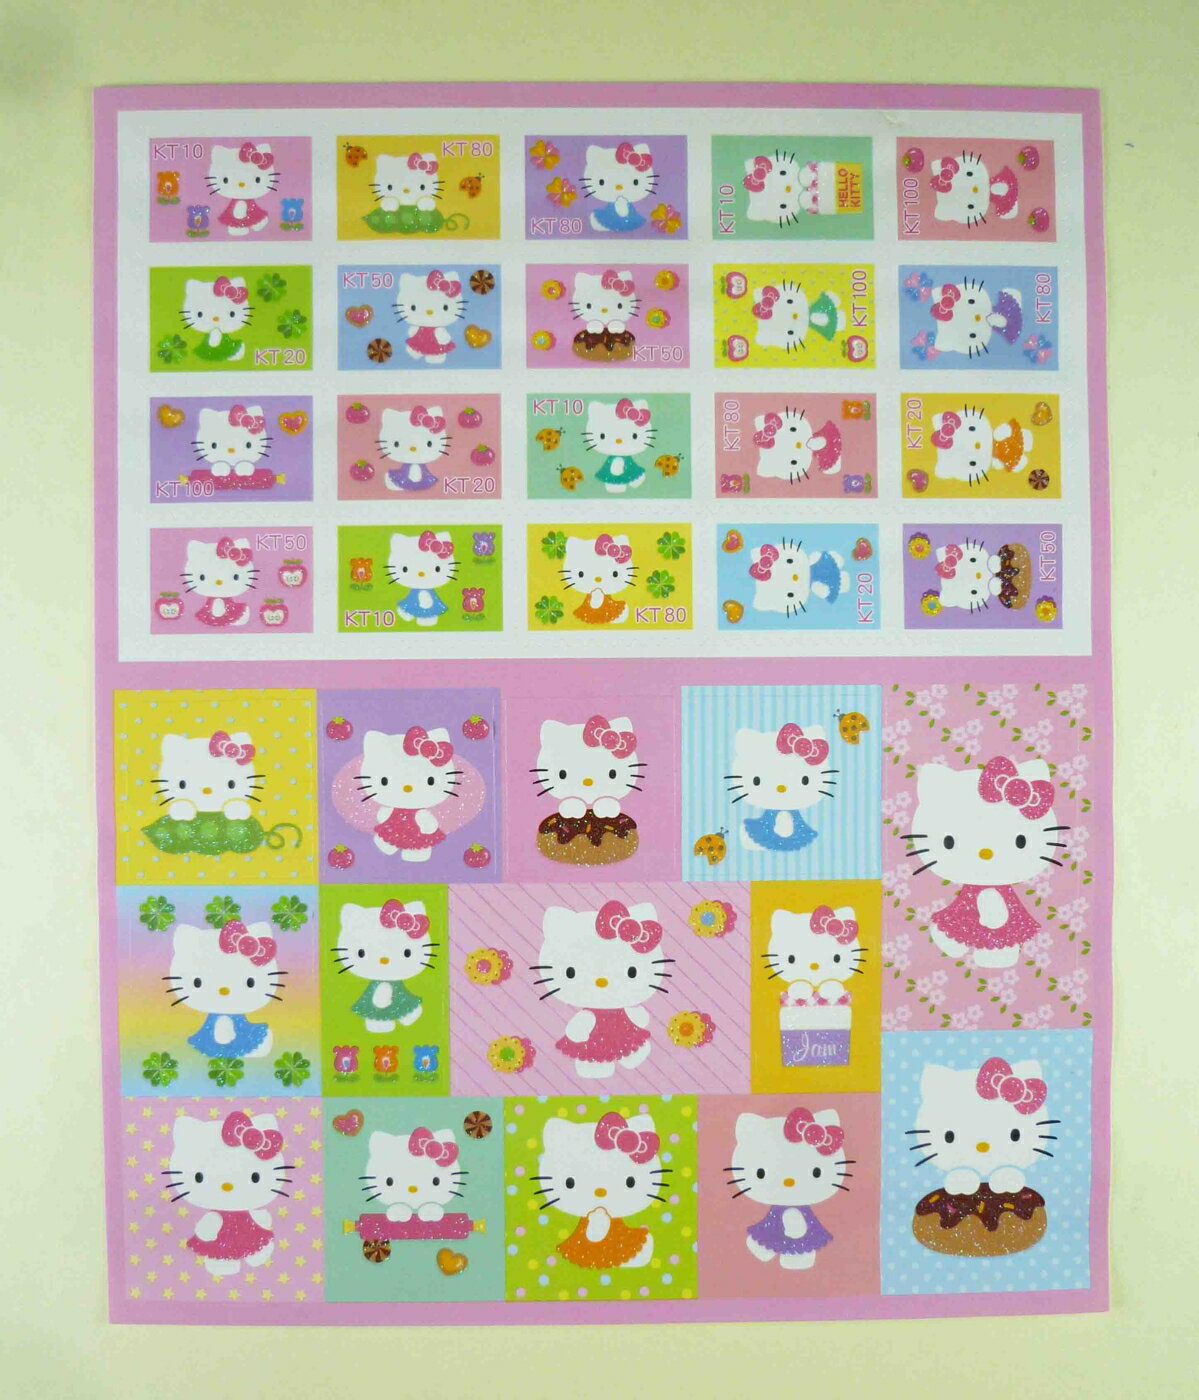 【震撼精品百貨】Hello Kitty 凱蒂貓 金蔥貼紙-仿郵票 震撼日式精品百貨